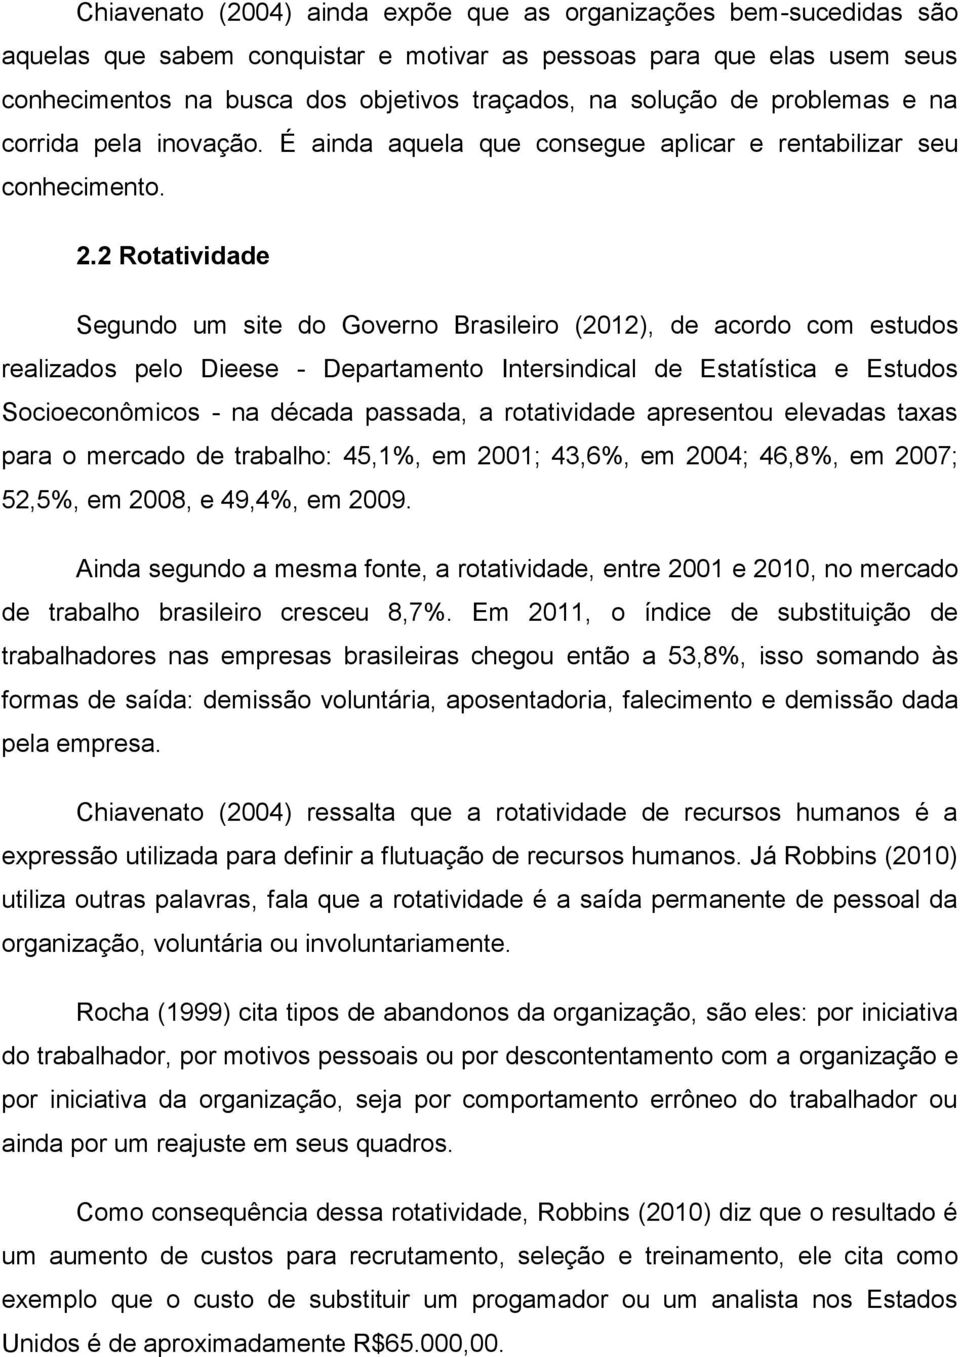 2 Rotatividade Segundo um site do Governo Brasileiro (2012), de acordo com estudos realizados pelo Dieese - Departamento Intersindical de Estatística e Estudos Socioeconômicos - na década passada, a